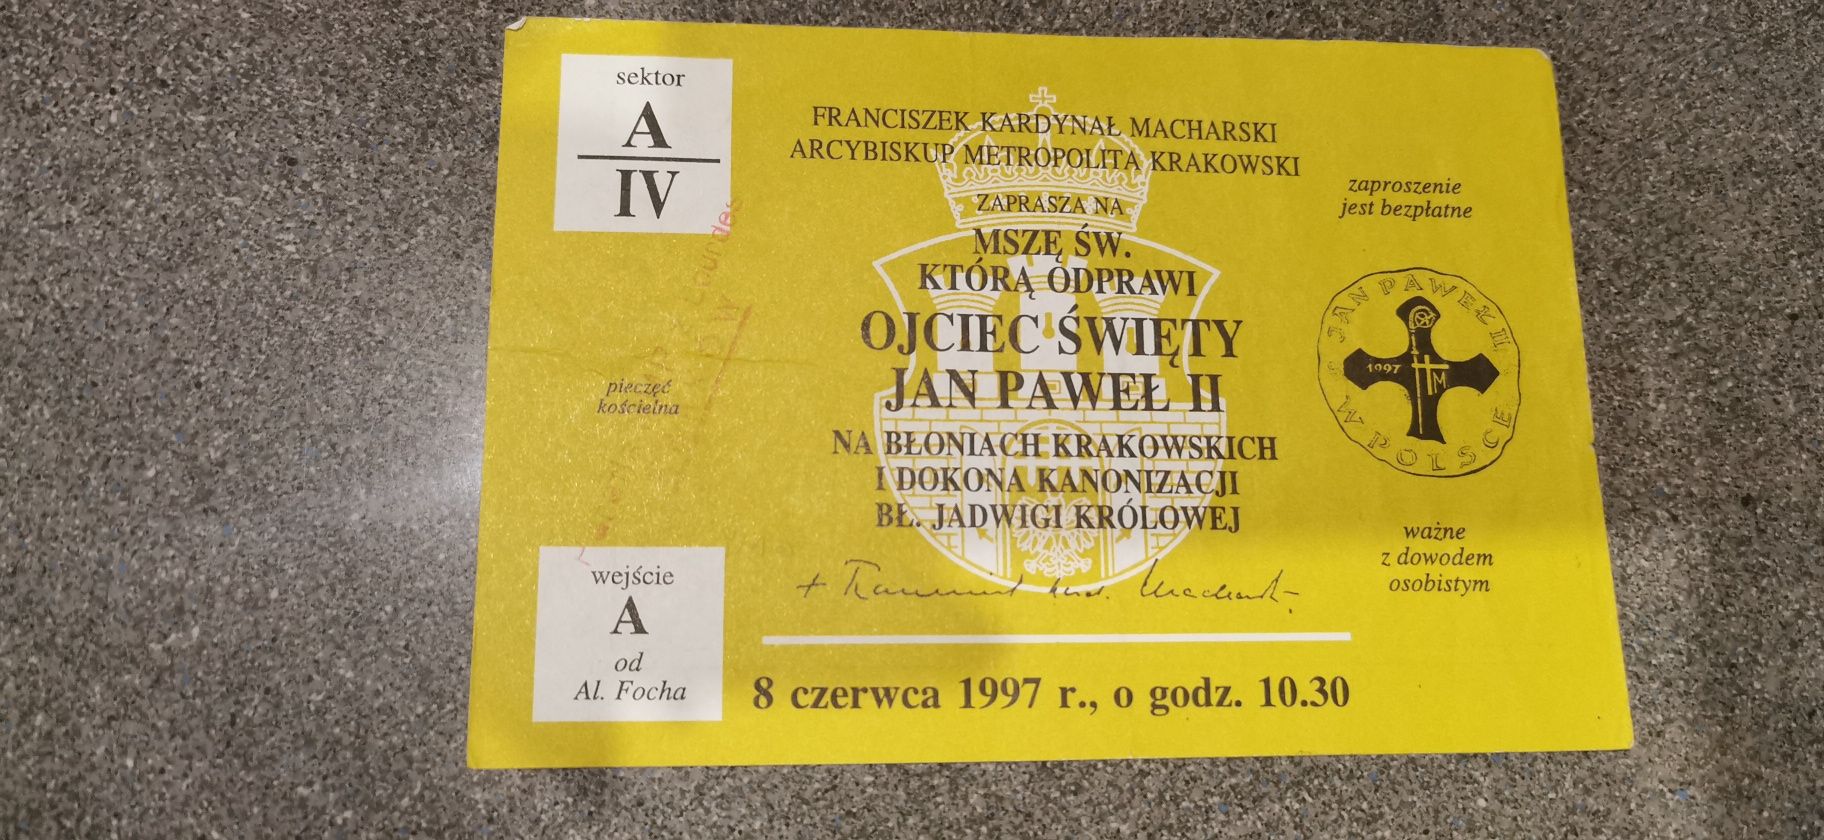 Bilet karnet kolekcjonerski zaproszenie Jan Paweł II  1997